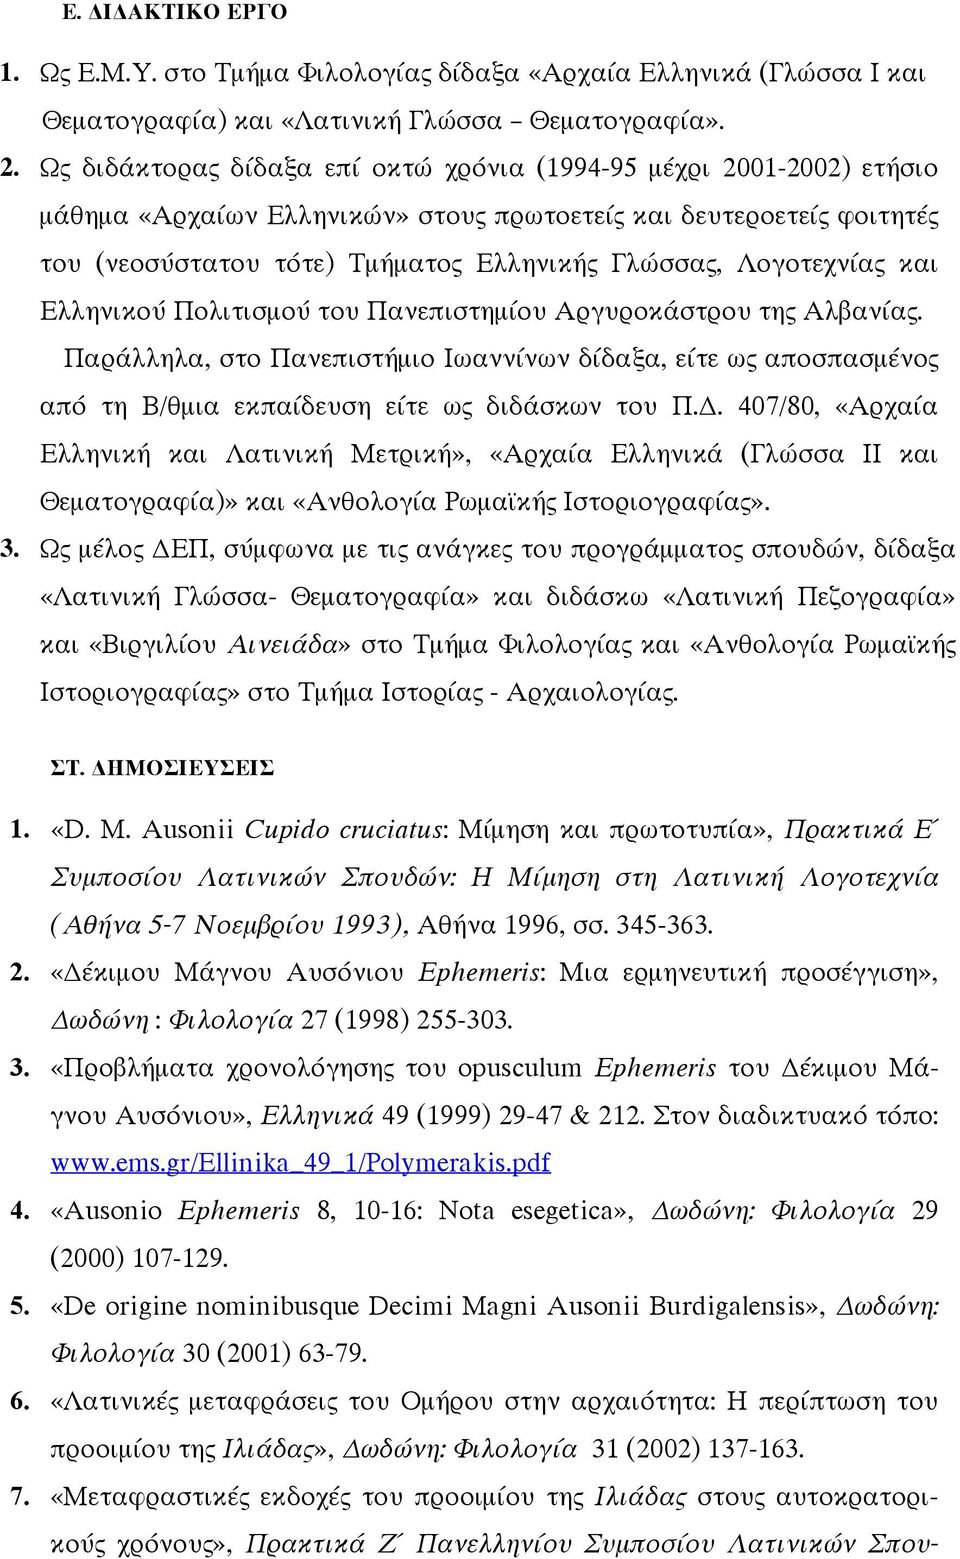 Ελληνικού Πολιτισµού του Πανεπιστηµίου Αργυροκάστρου τη Αλβανία. Παράλληλα, στο Πανεπιστήµιο Ιωαννίνων δίδαξα, είτε ω αποσπασµένο από τη Β/θµια εκπαίδευση είτε ω διδάσκων του Π.